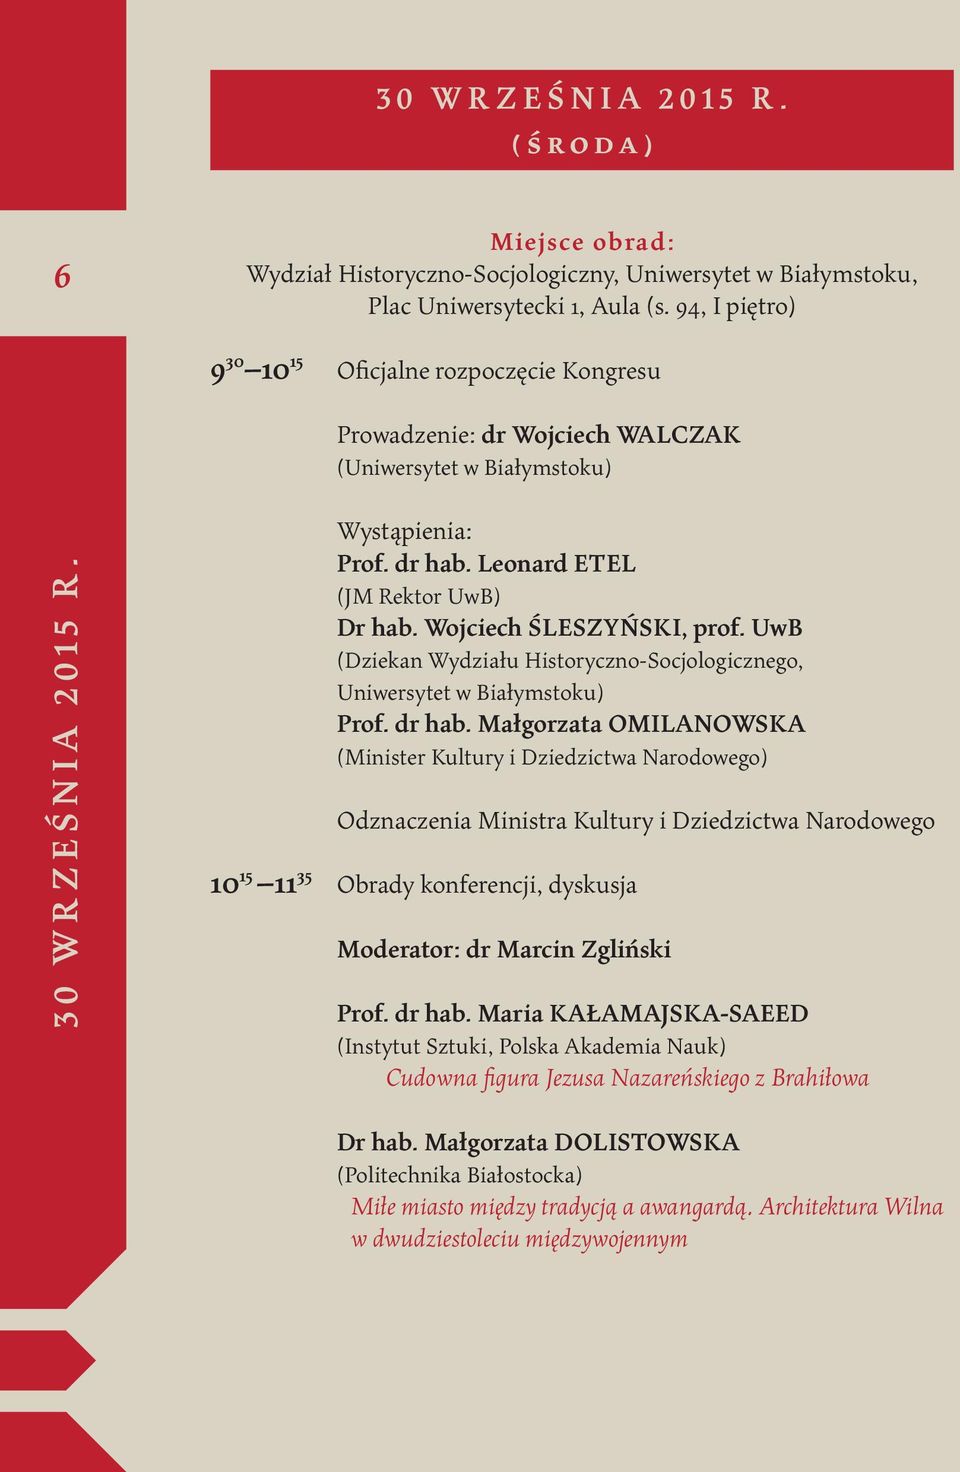 Wojciech ŚLESZYŃSKI, prof. UwB (Dziekan Wydziału Historyczno-Socjologicznego, Uniwersytet w Białymstoku) Prof. dr hab.